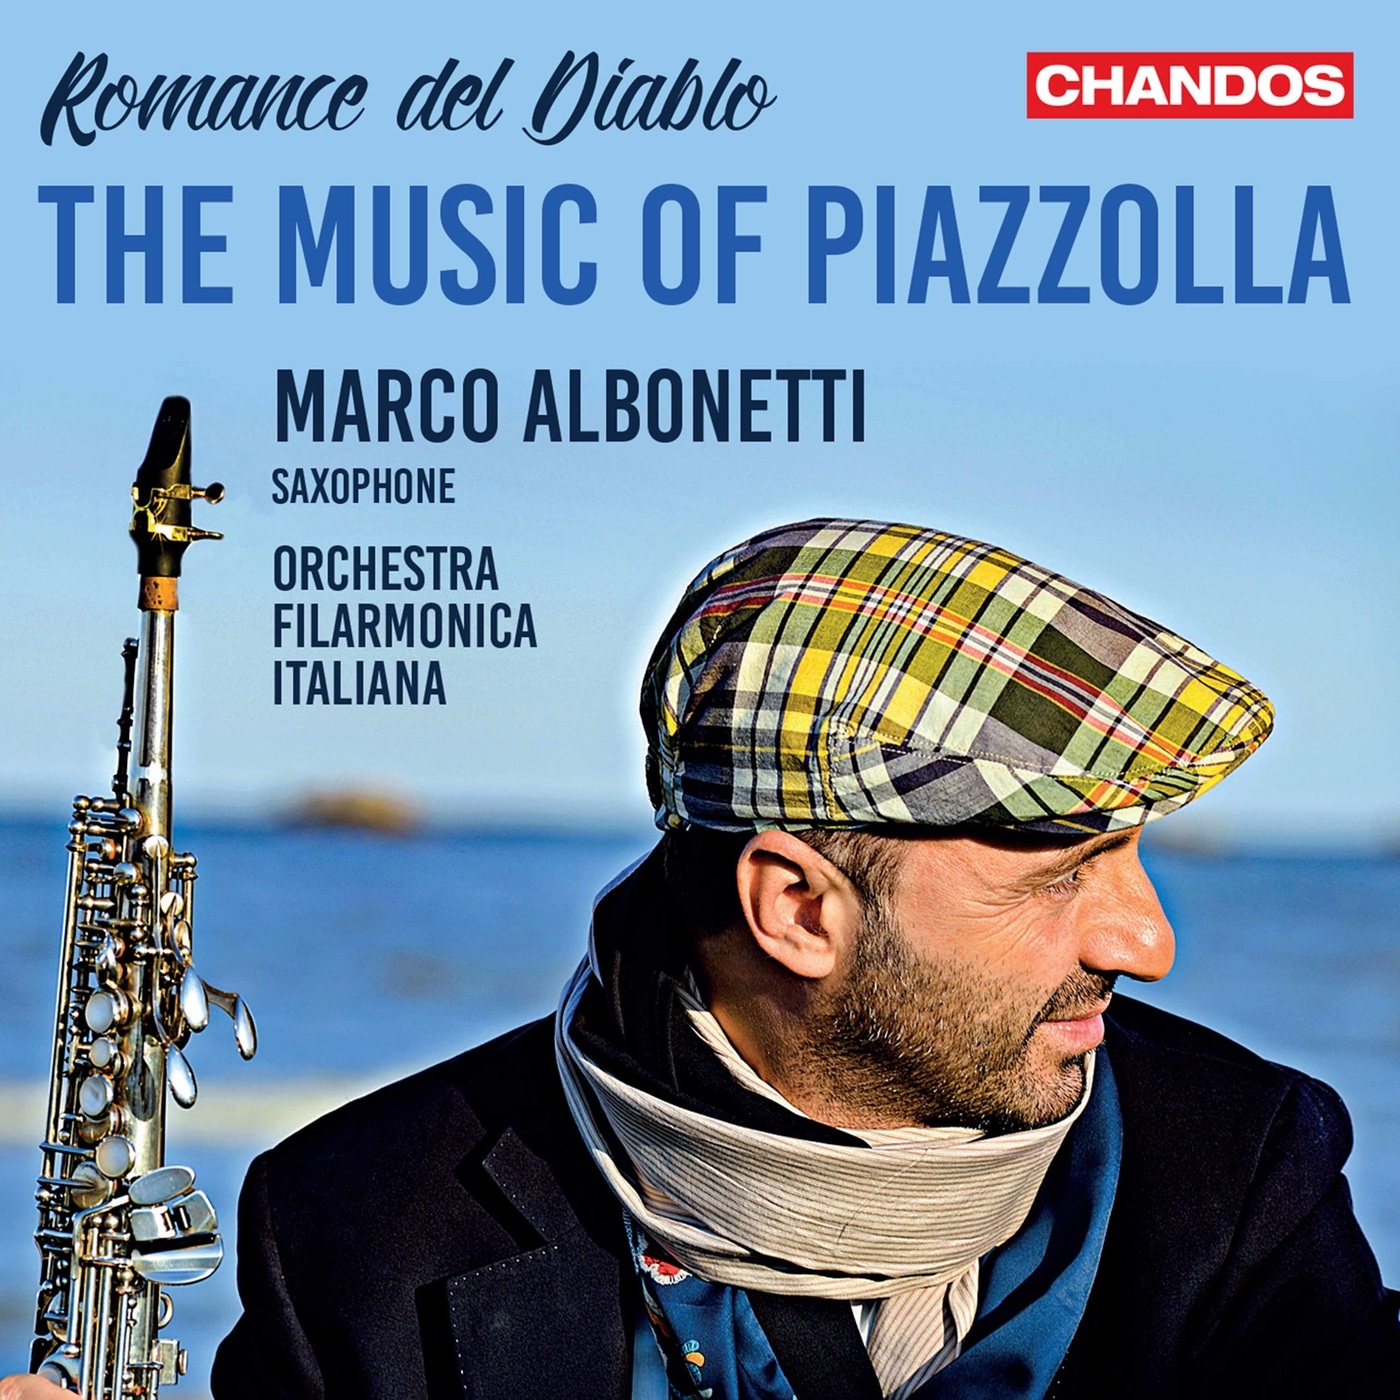 Marco Albonetti & Orchestra Filarmonica Italiana – Romance del Diablo: The Music of Piazzolla (2021) [FLAC 24bit/48kHz]